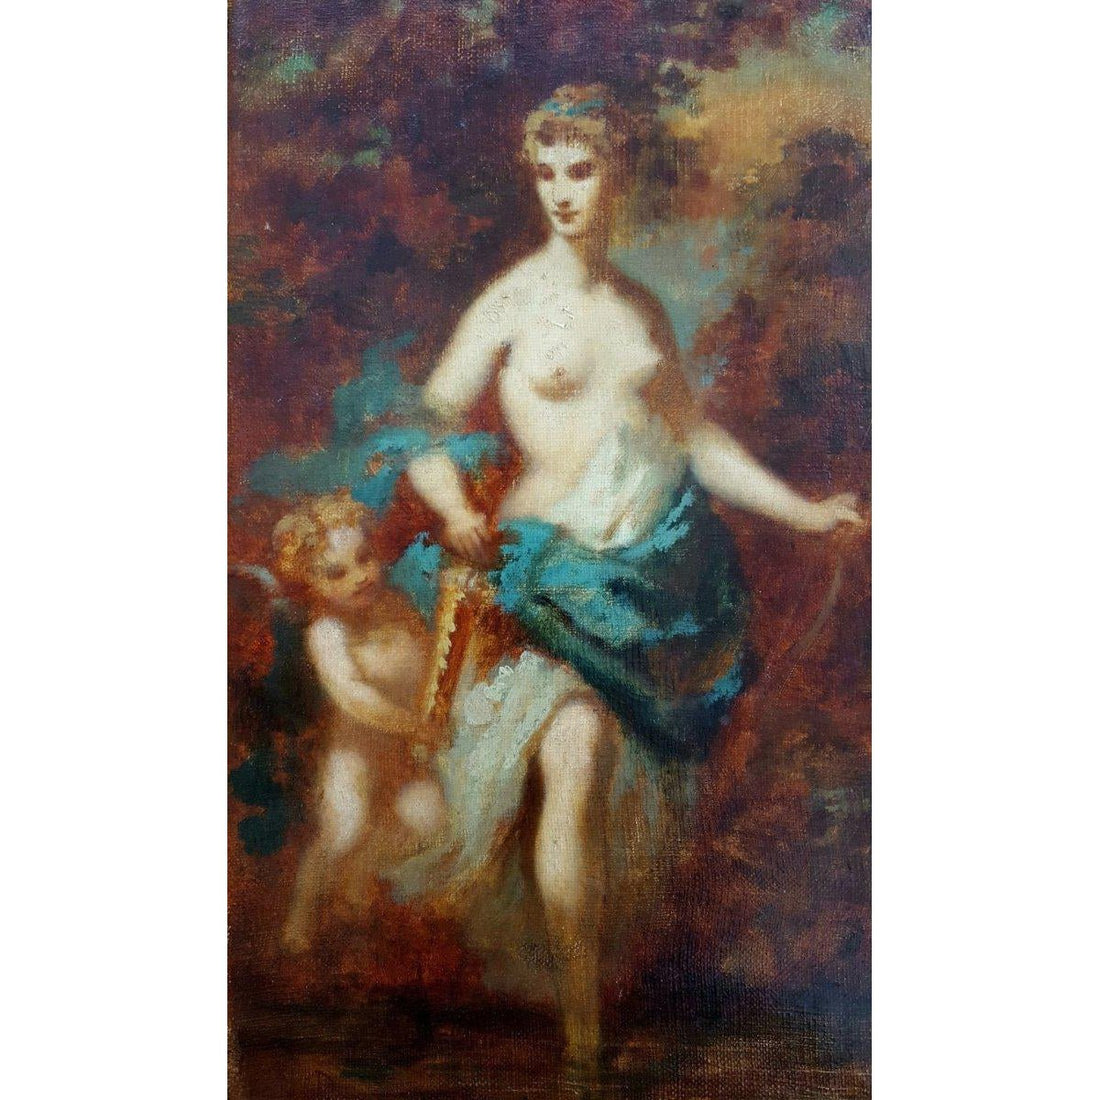 Narcisse Diaz de la Peña (attributed) - Diana and Cupid - Circa 1850 - Winckelmann Gallery